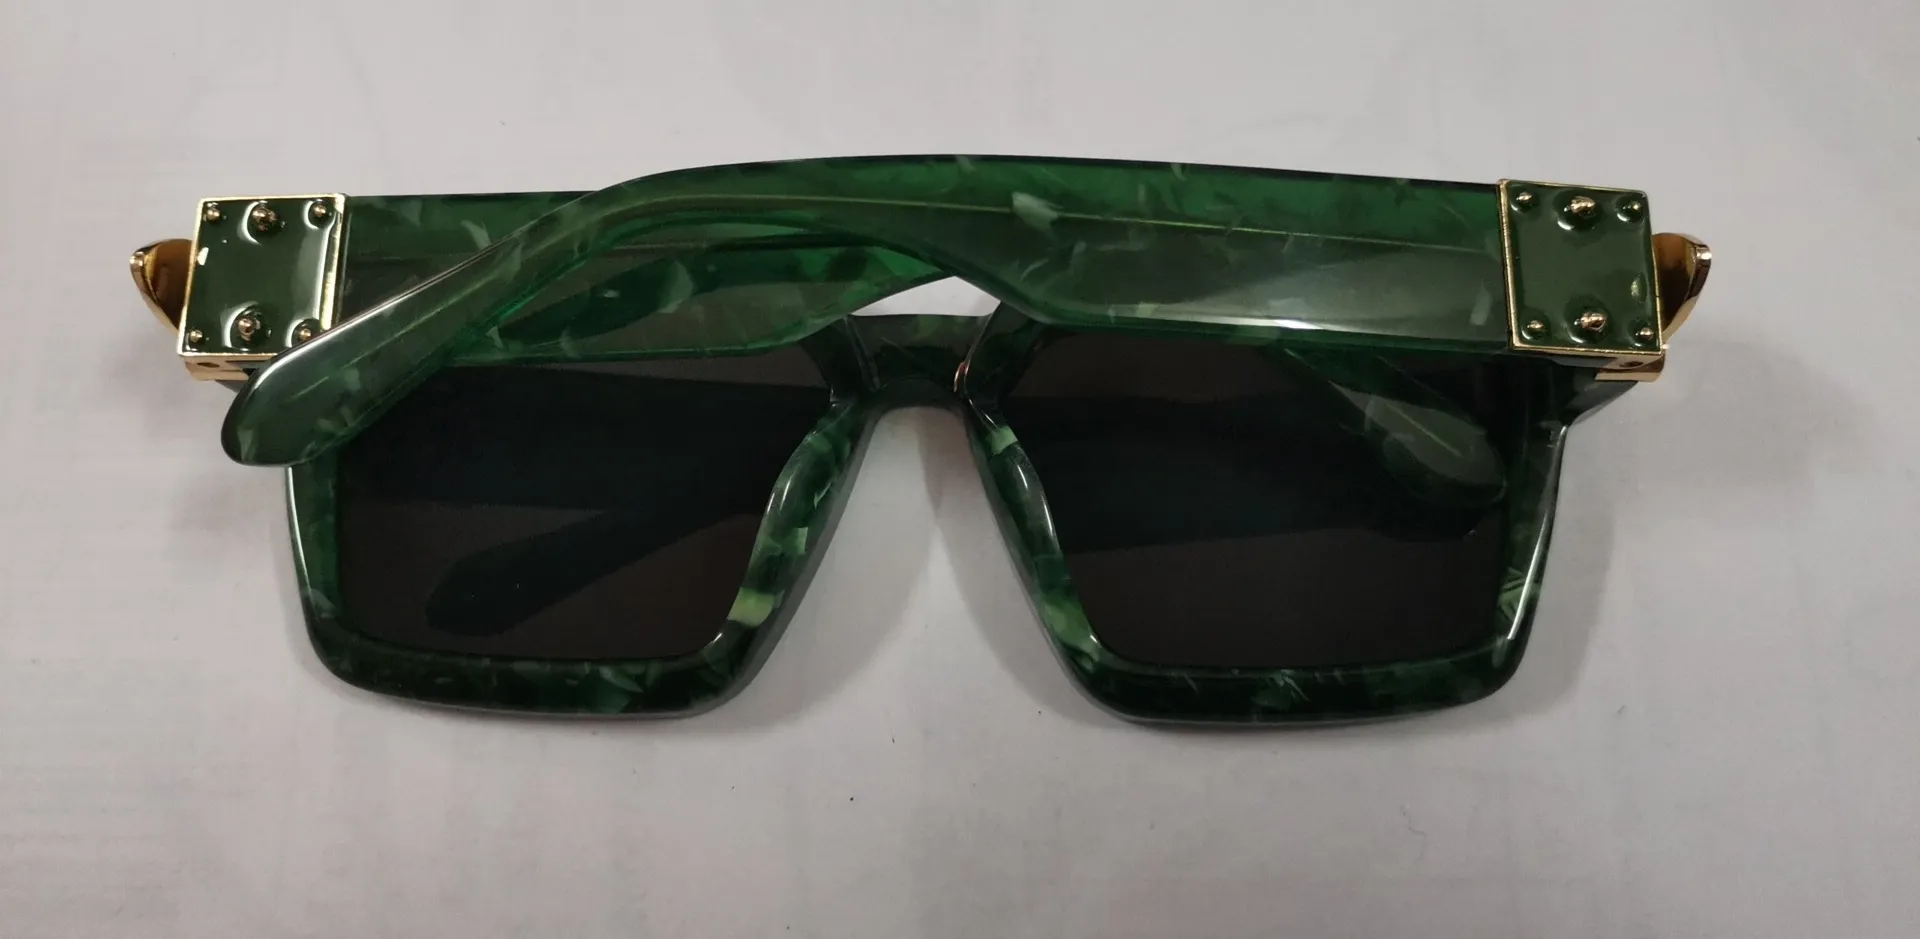 Новые солнцезащитные очки no c буква 1165 Солнцезащитные очки Gafas de Sol Songlass Ways Ellipse Box Солнцезащитные очки мужчины женщины солнцезащитные очки цвета Oculos с 218p